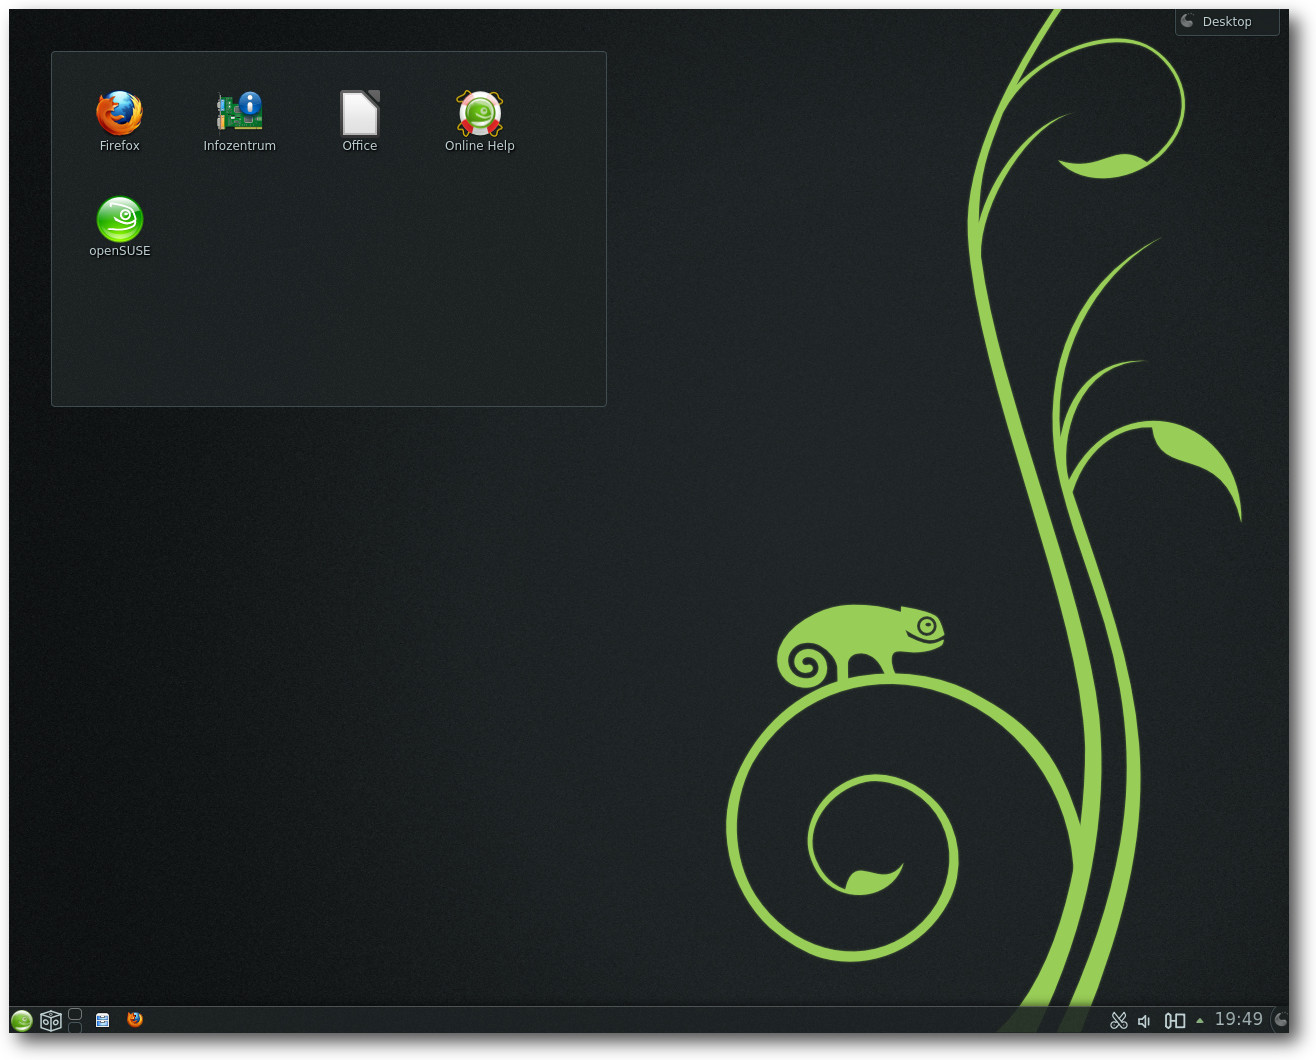 openSUSE_KDE.jpg